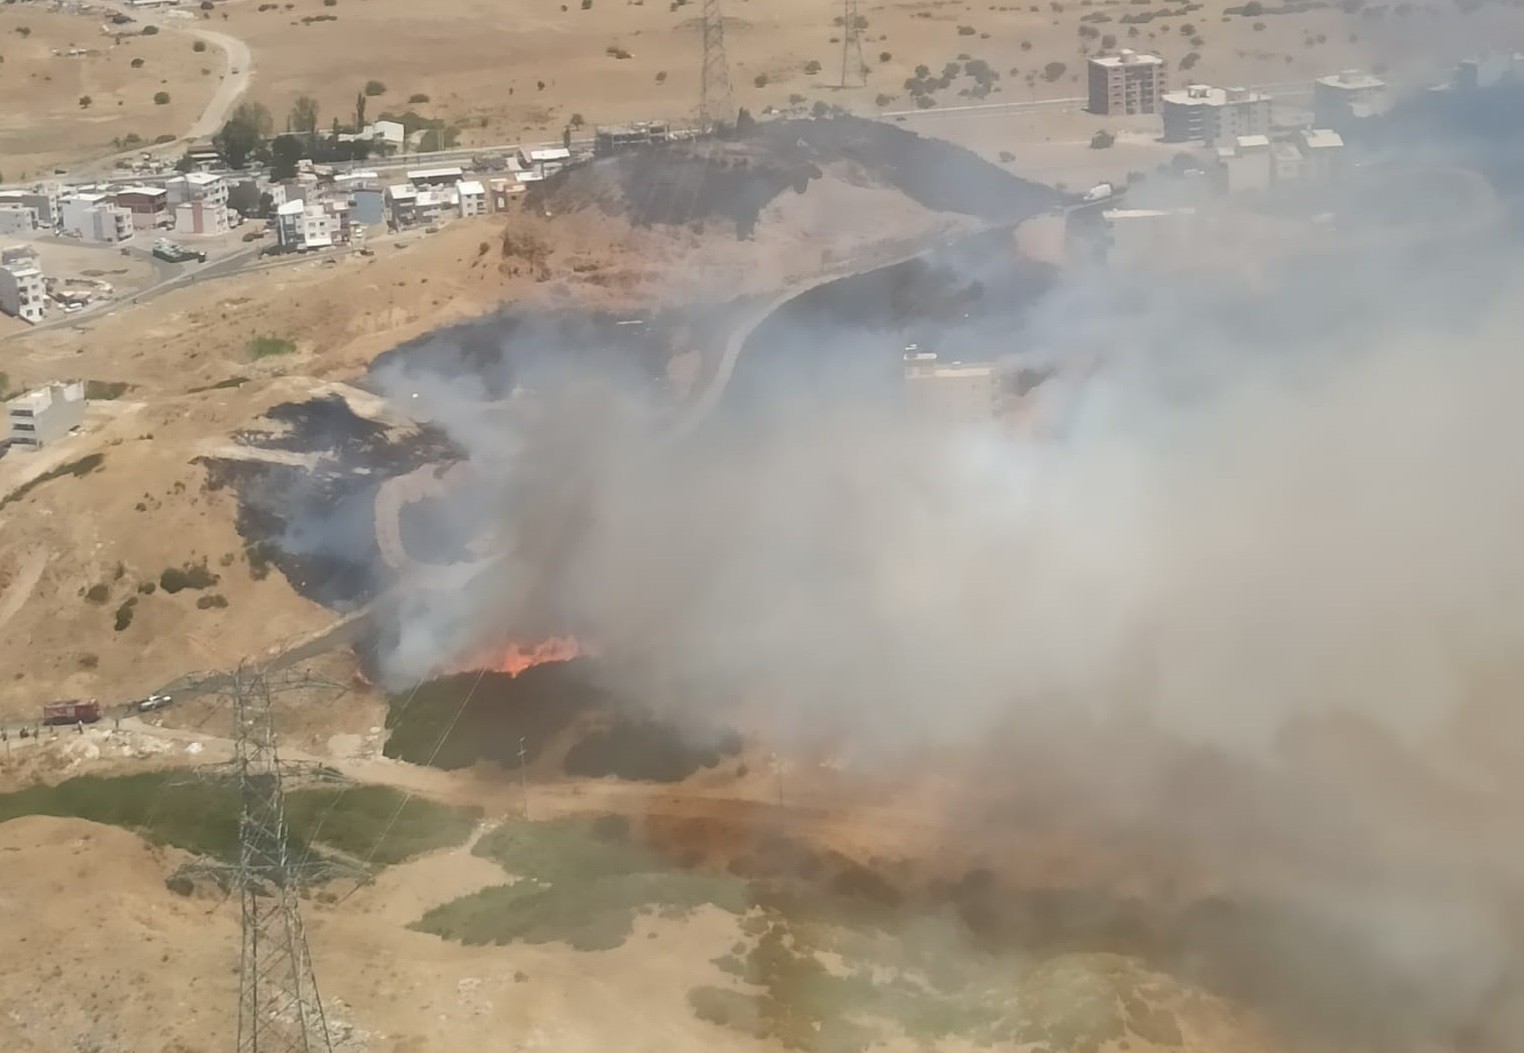 Aliağa'da otluk alandaki yangında 13 kişi dumandan etkilendi